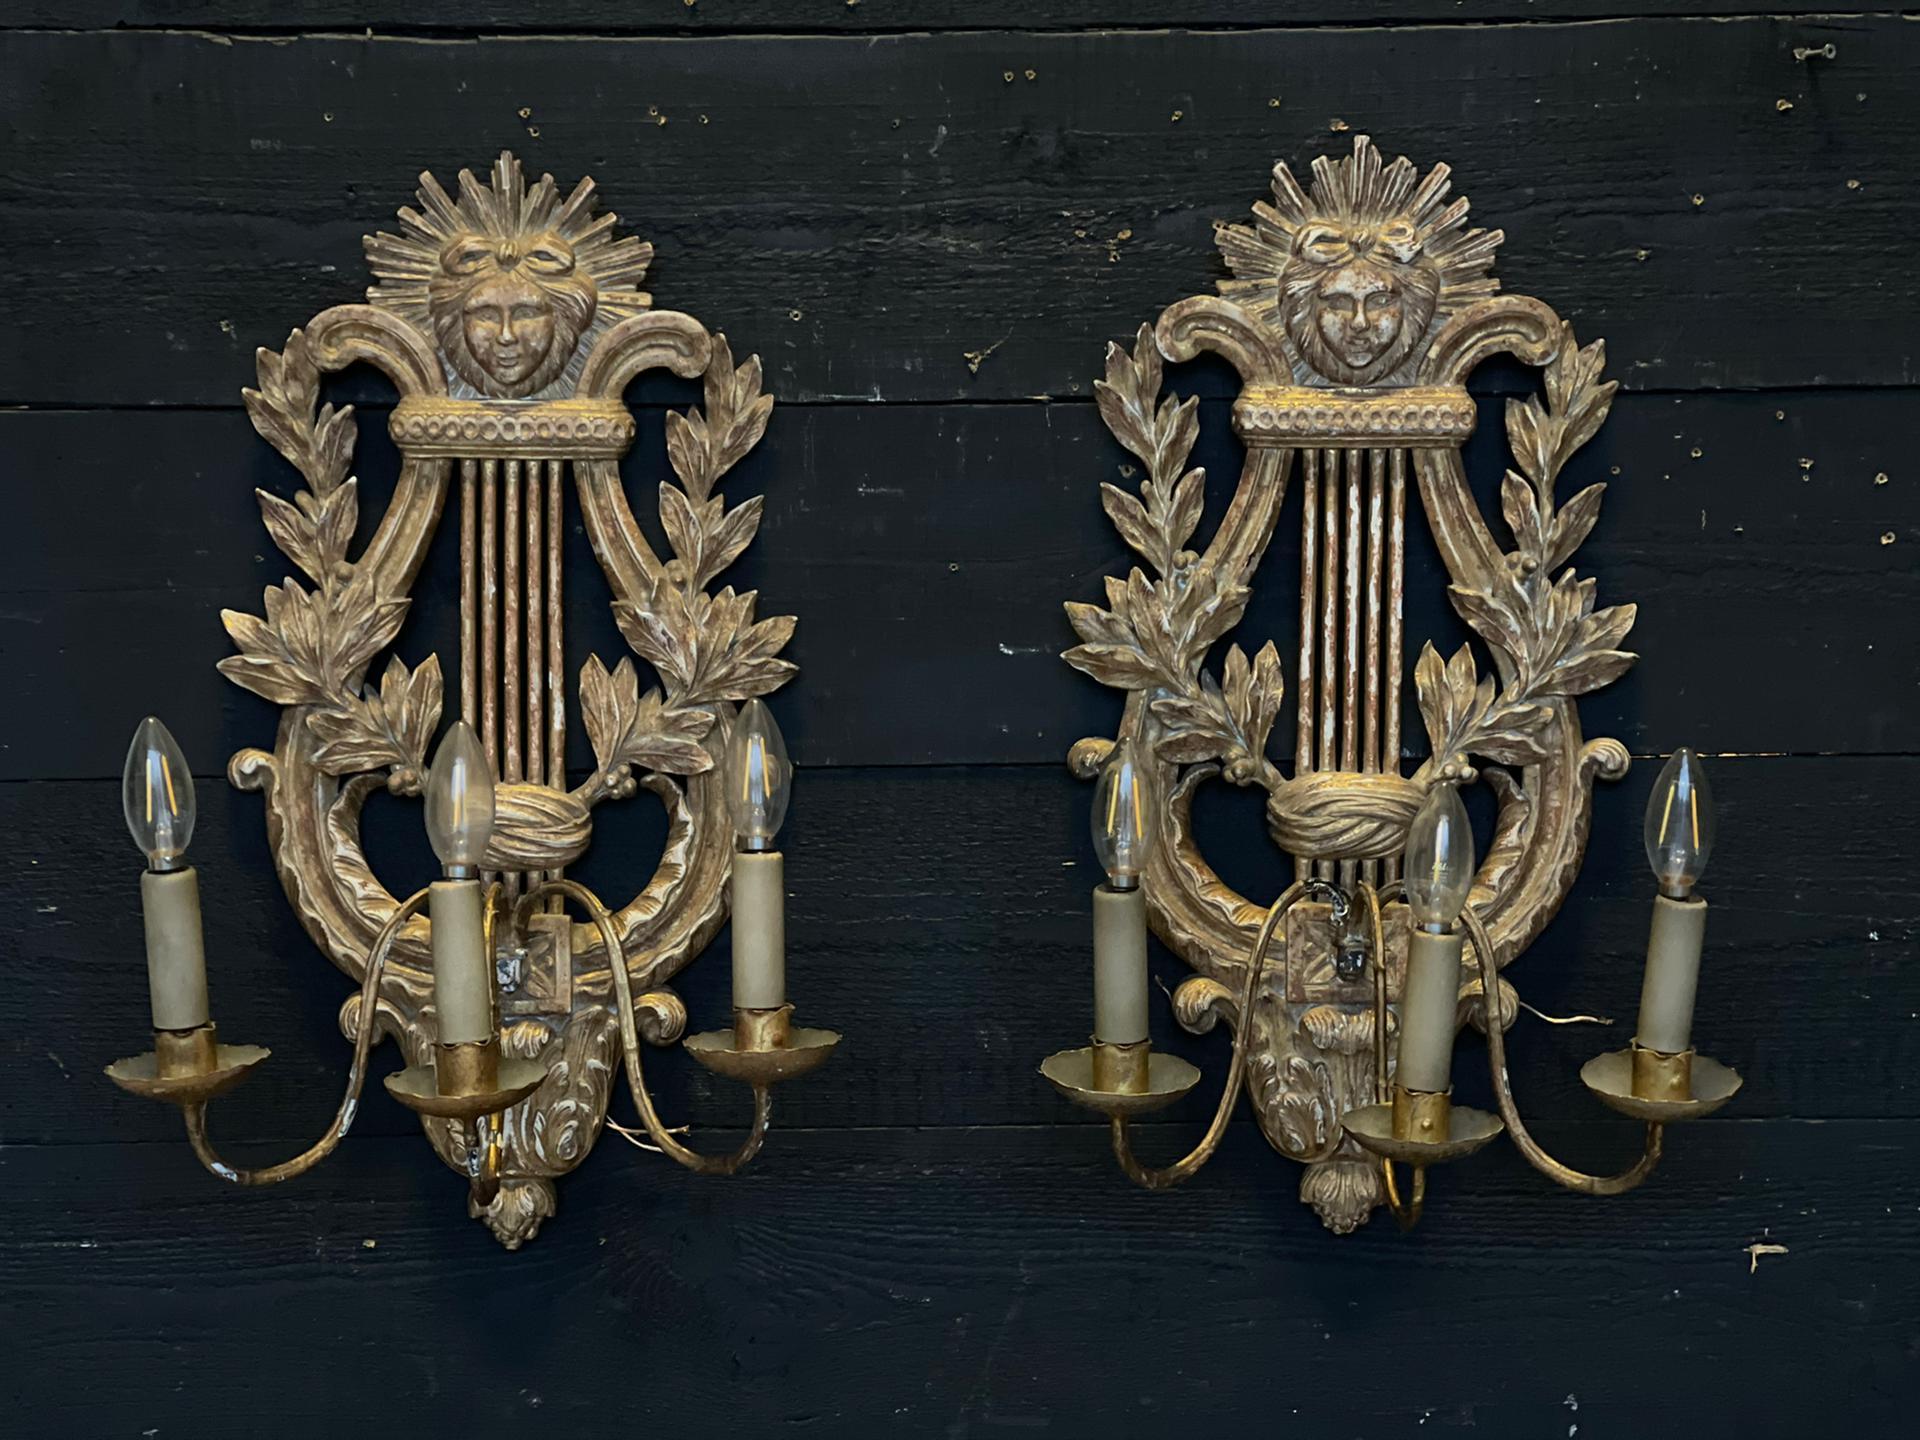 Ein hervorragendes Paar französischer vergoldeter Holz-Wandleuchten oder Wandleuchter. Datiert auf die Zeit zwischen 1900 und 1920. Holz geschnitzt mit Gesso und vergoldet. Diese müssen von einem qualifizierten Elektriker verkabelt werden.
In